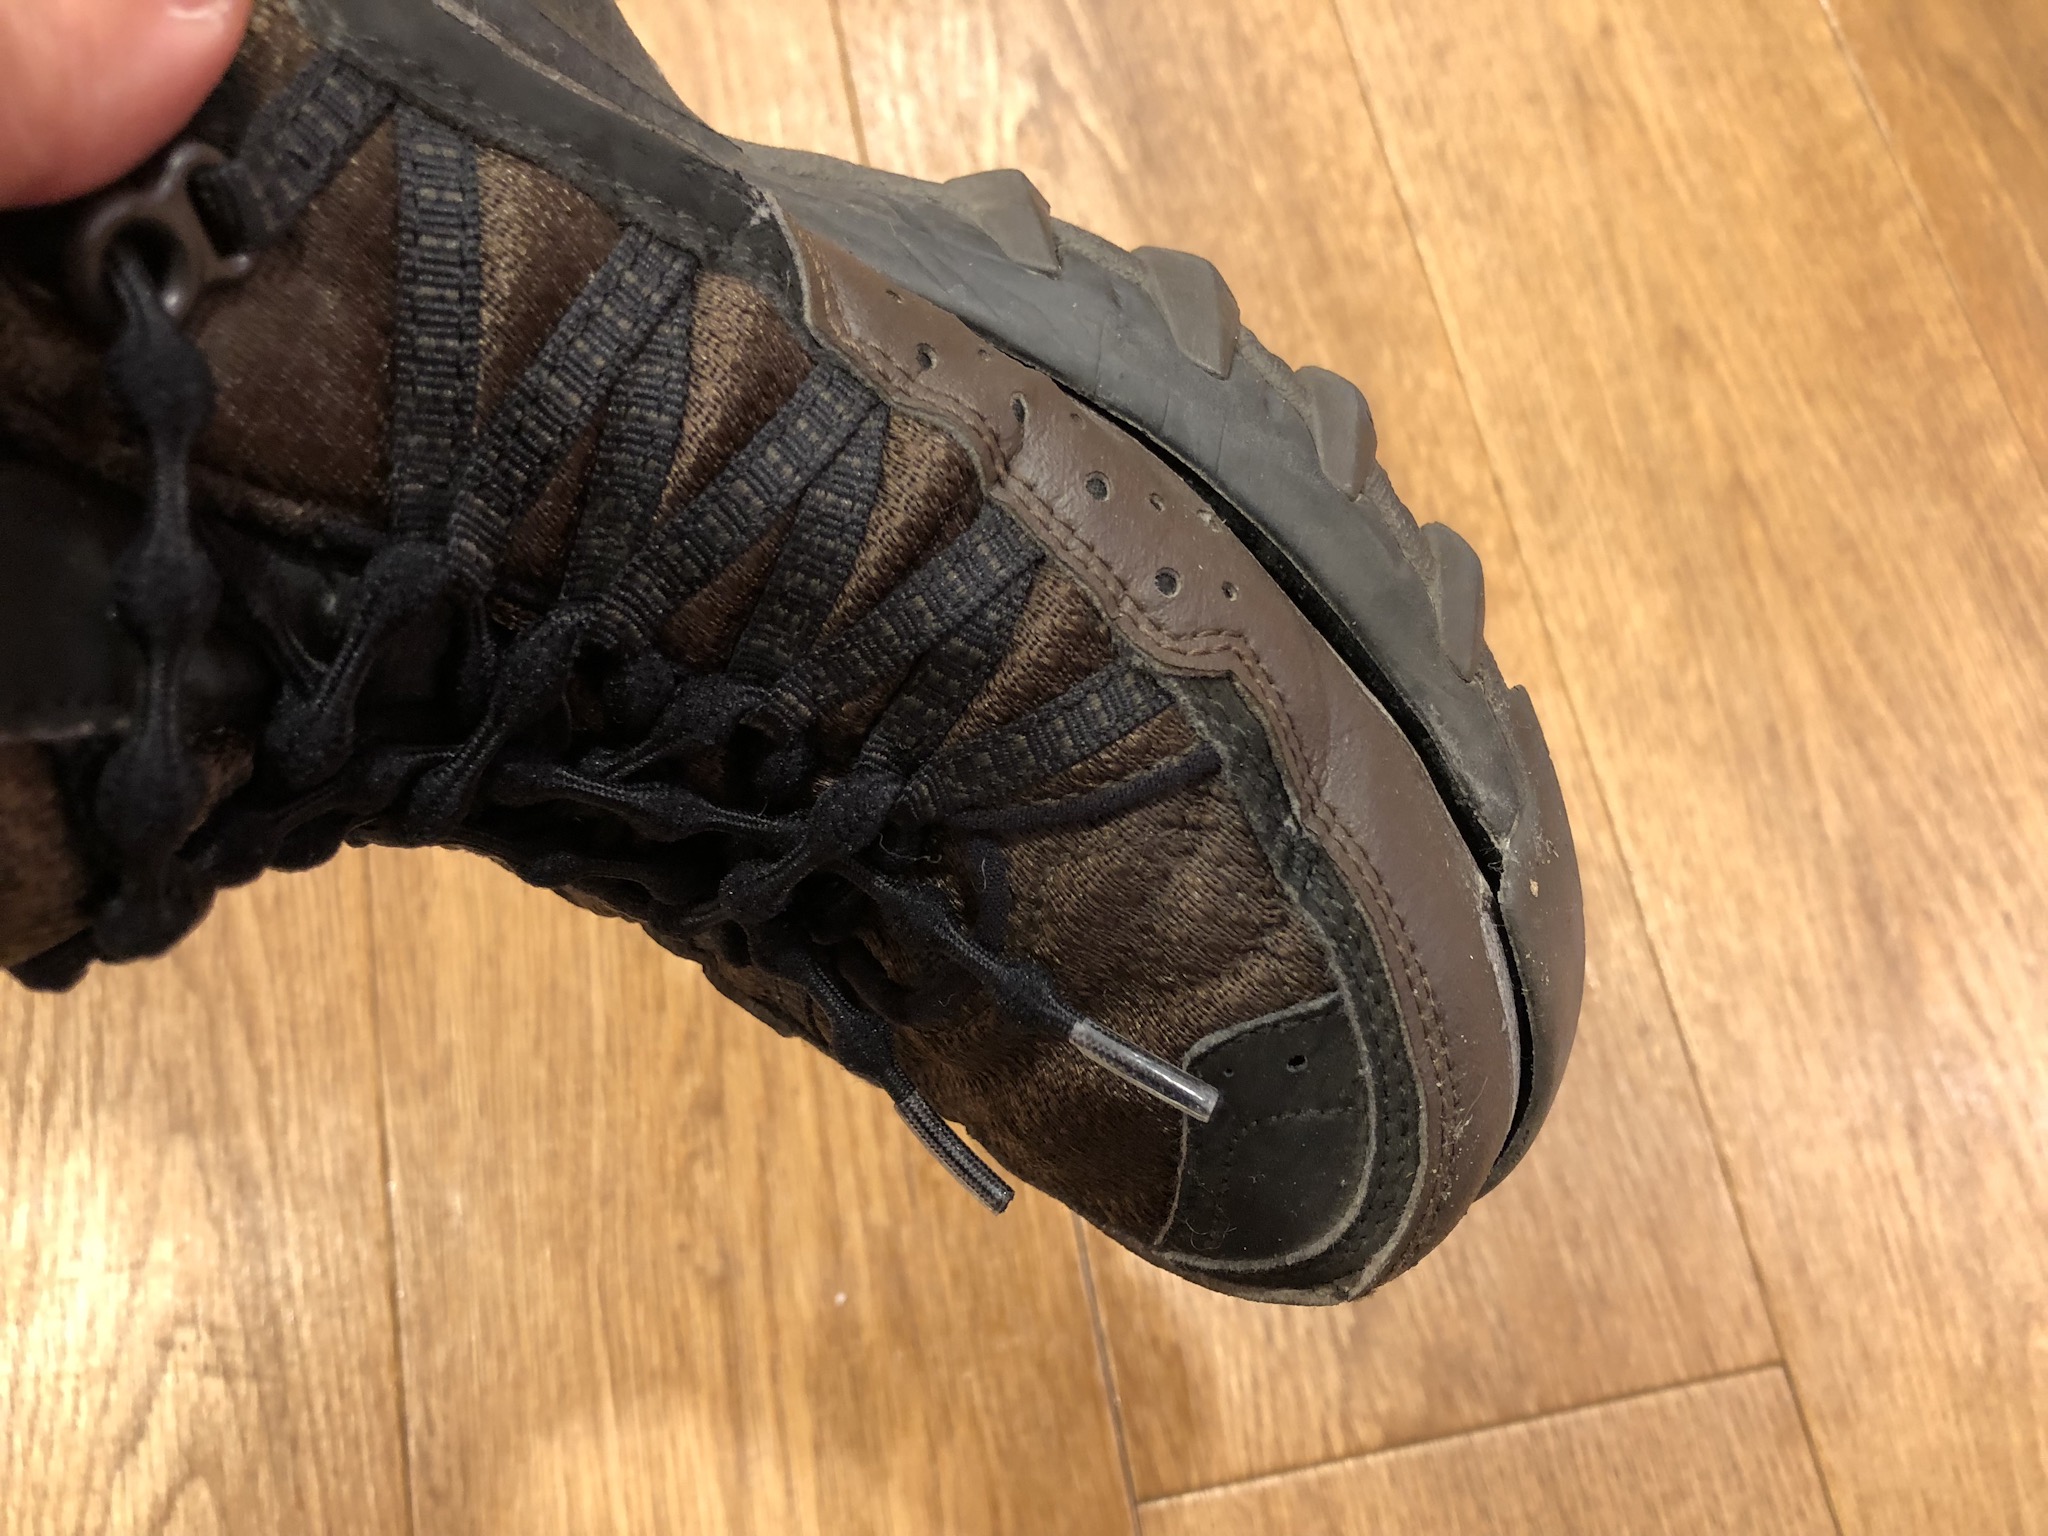 ナイキのタカオ。高尾山のような場所に登るためにデザインされた靴です。